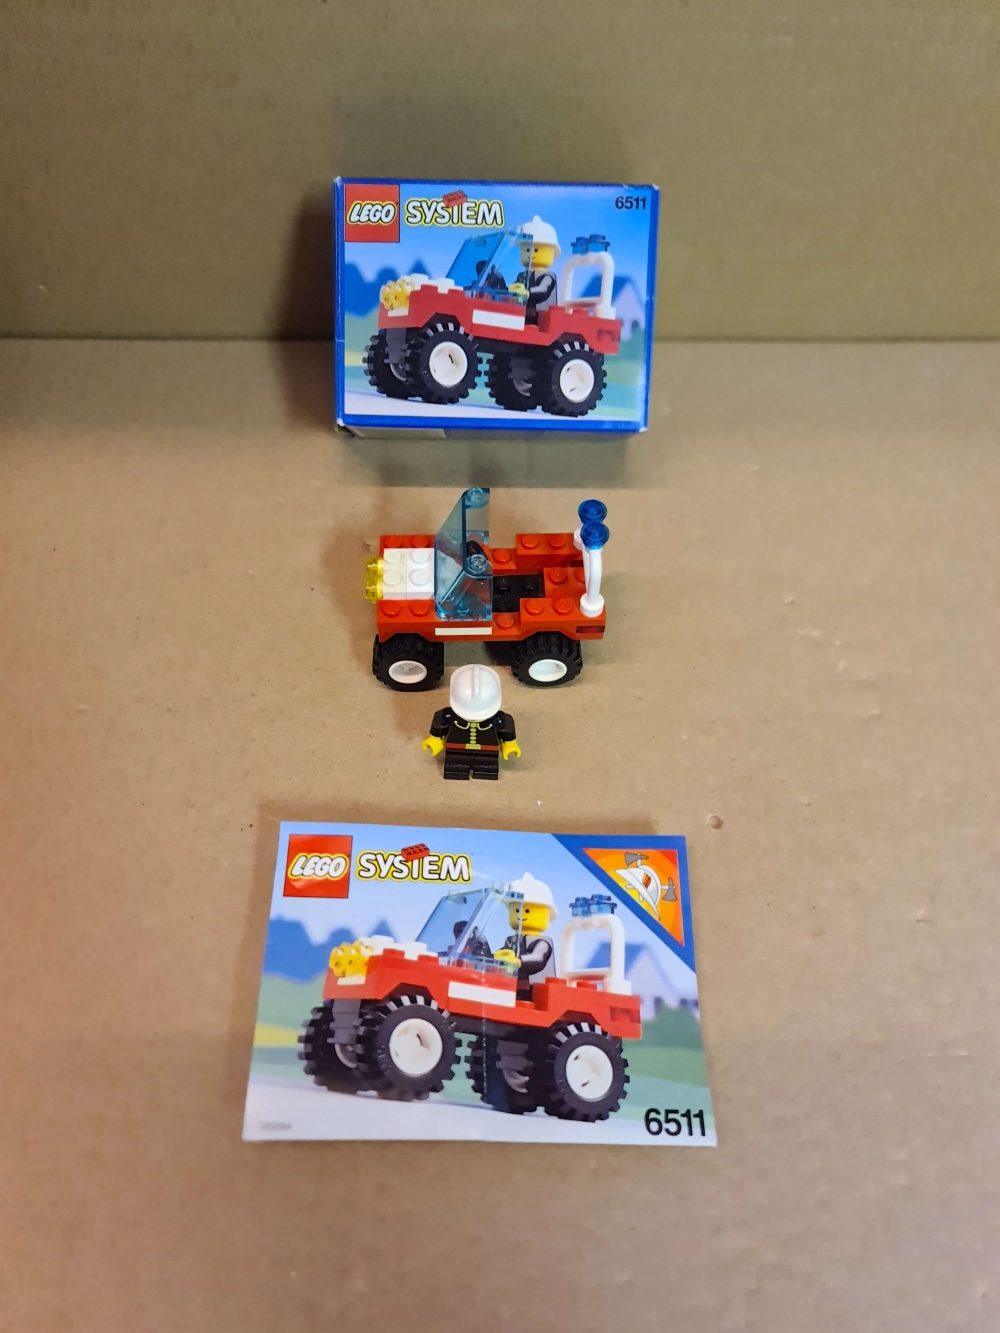 Sett 6511 fra Lego Classic Town serien.
Flott sett. Komplett med manual og eske